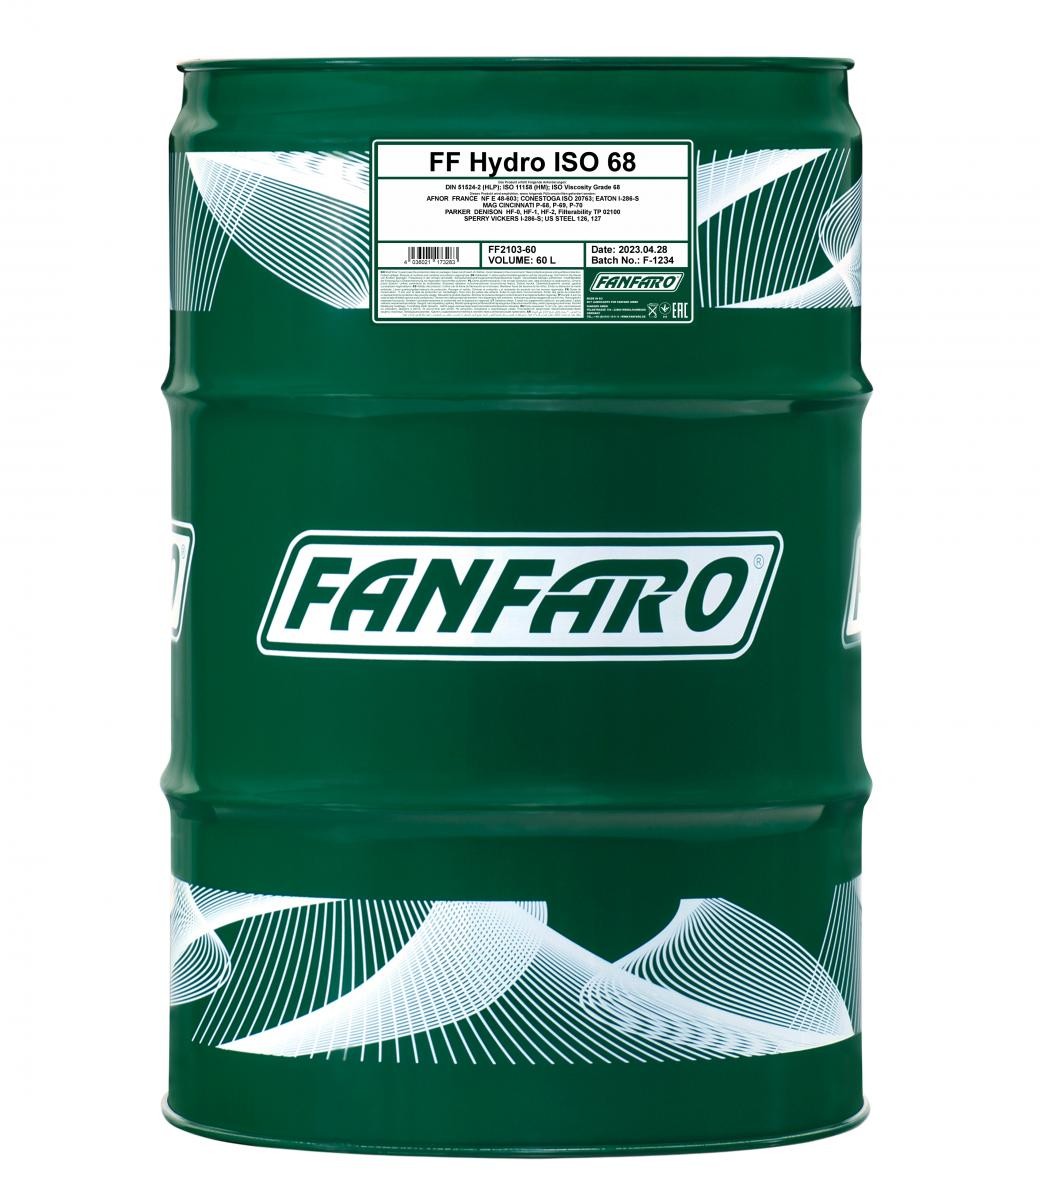 FANFARO Hydro, ISO 68 FF2103-60 Hydraulic Oil Capacity: 60l